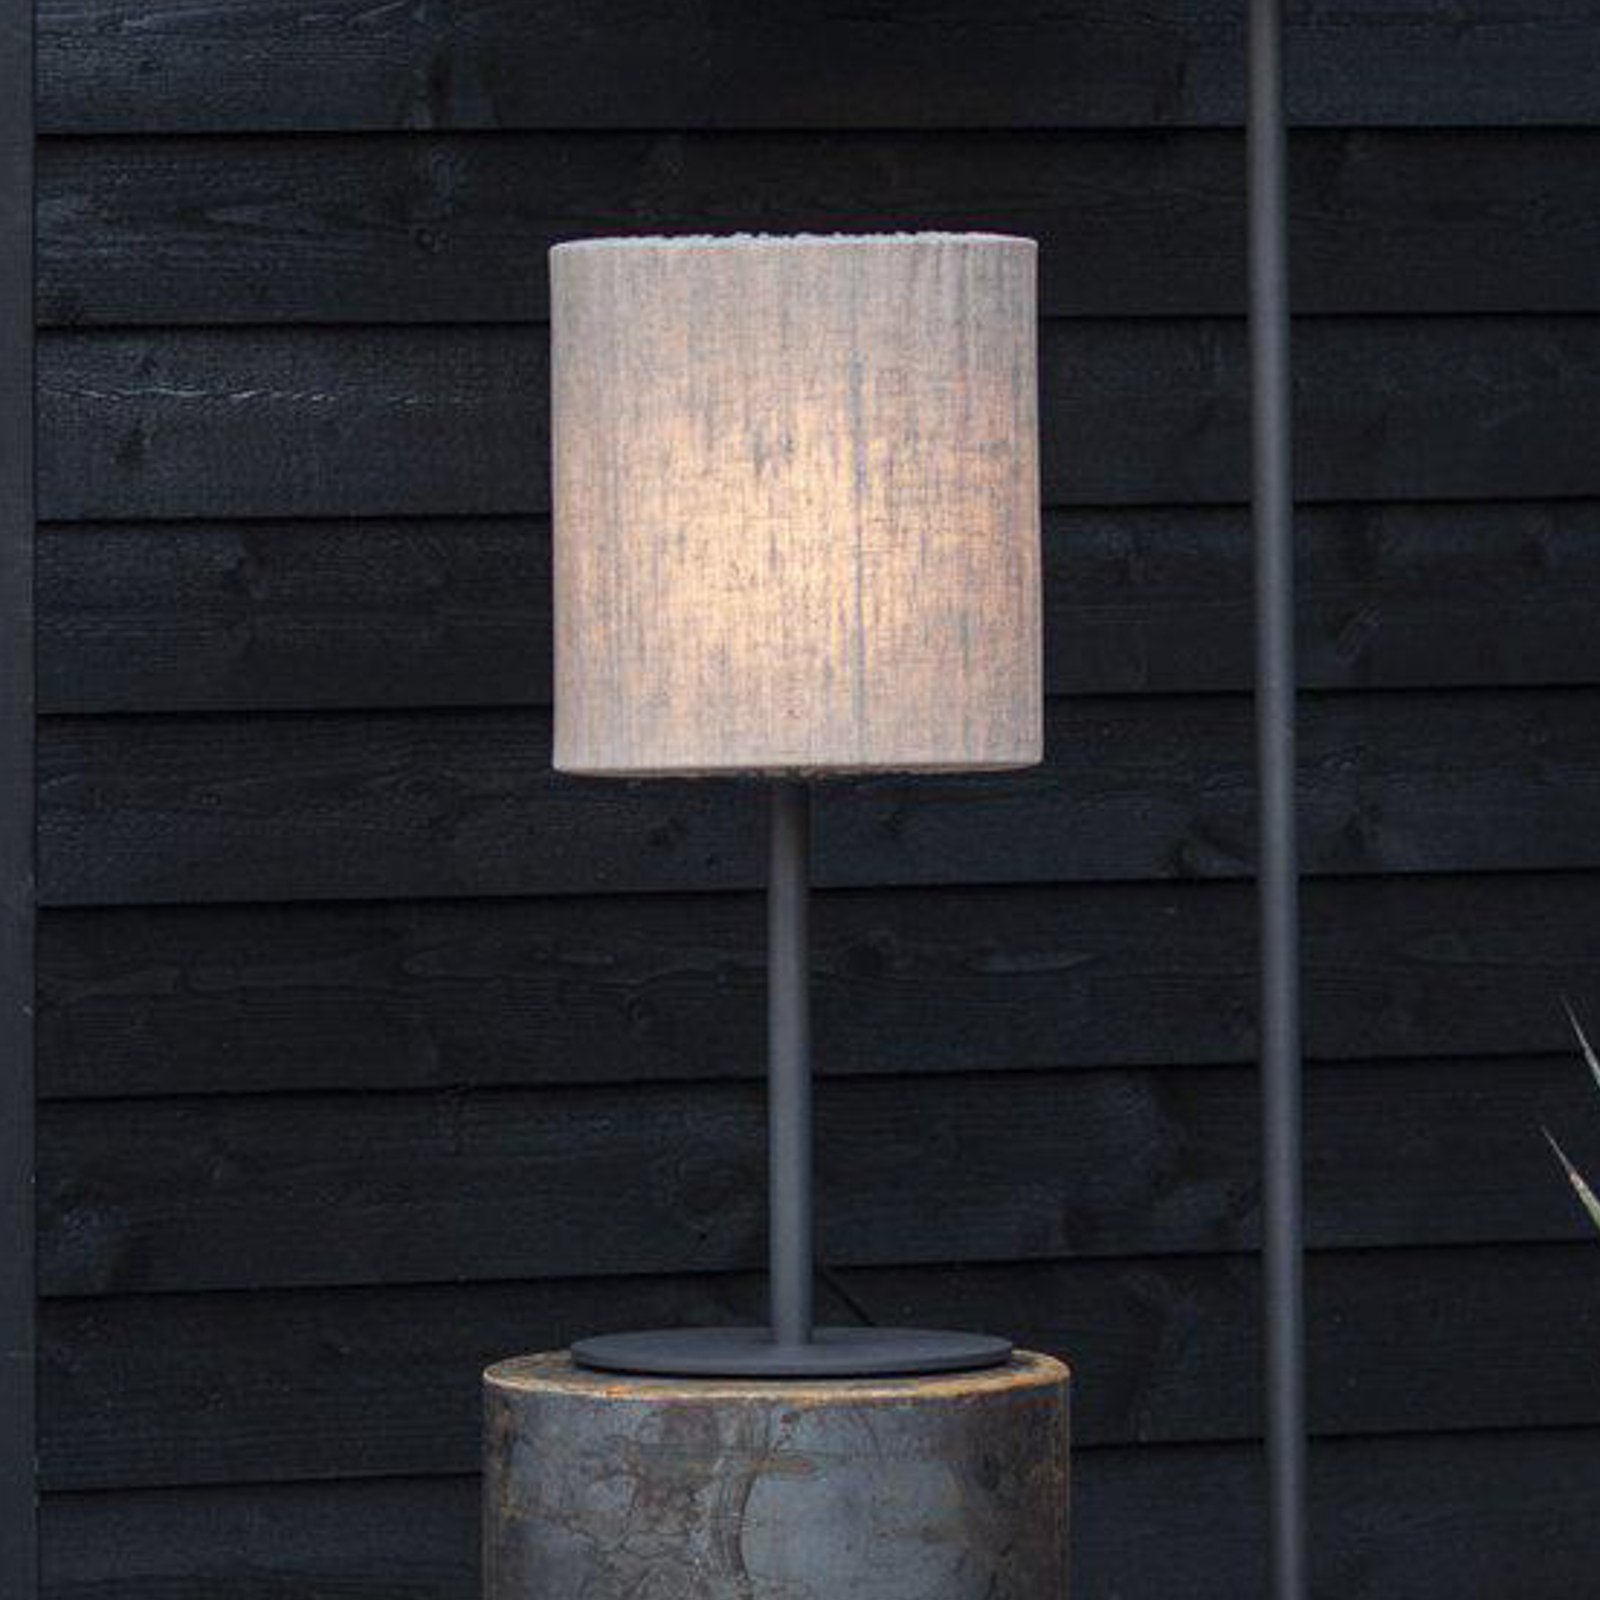 PR Home lampada da tavolo per esterni Agnar, grigio scuro / bianco, 57 cm